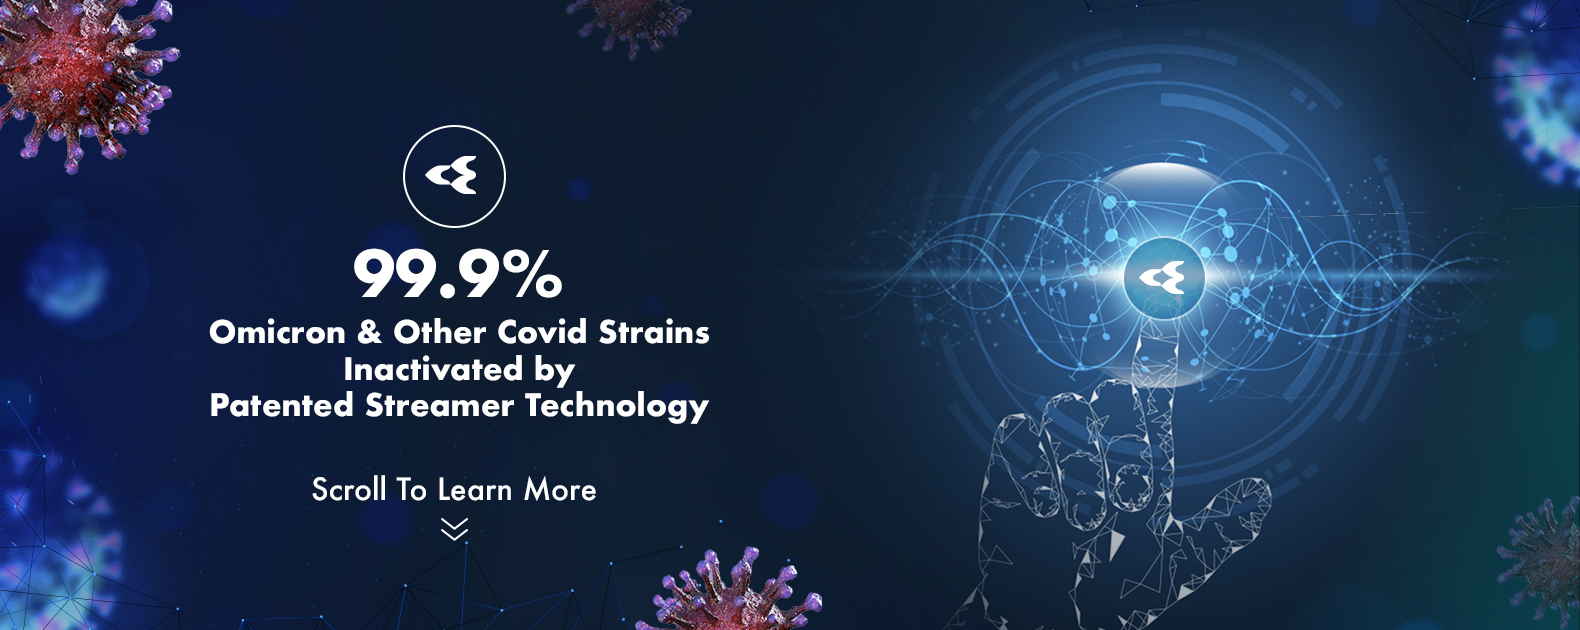 streamer-technology-coronaviruses